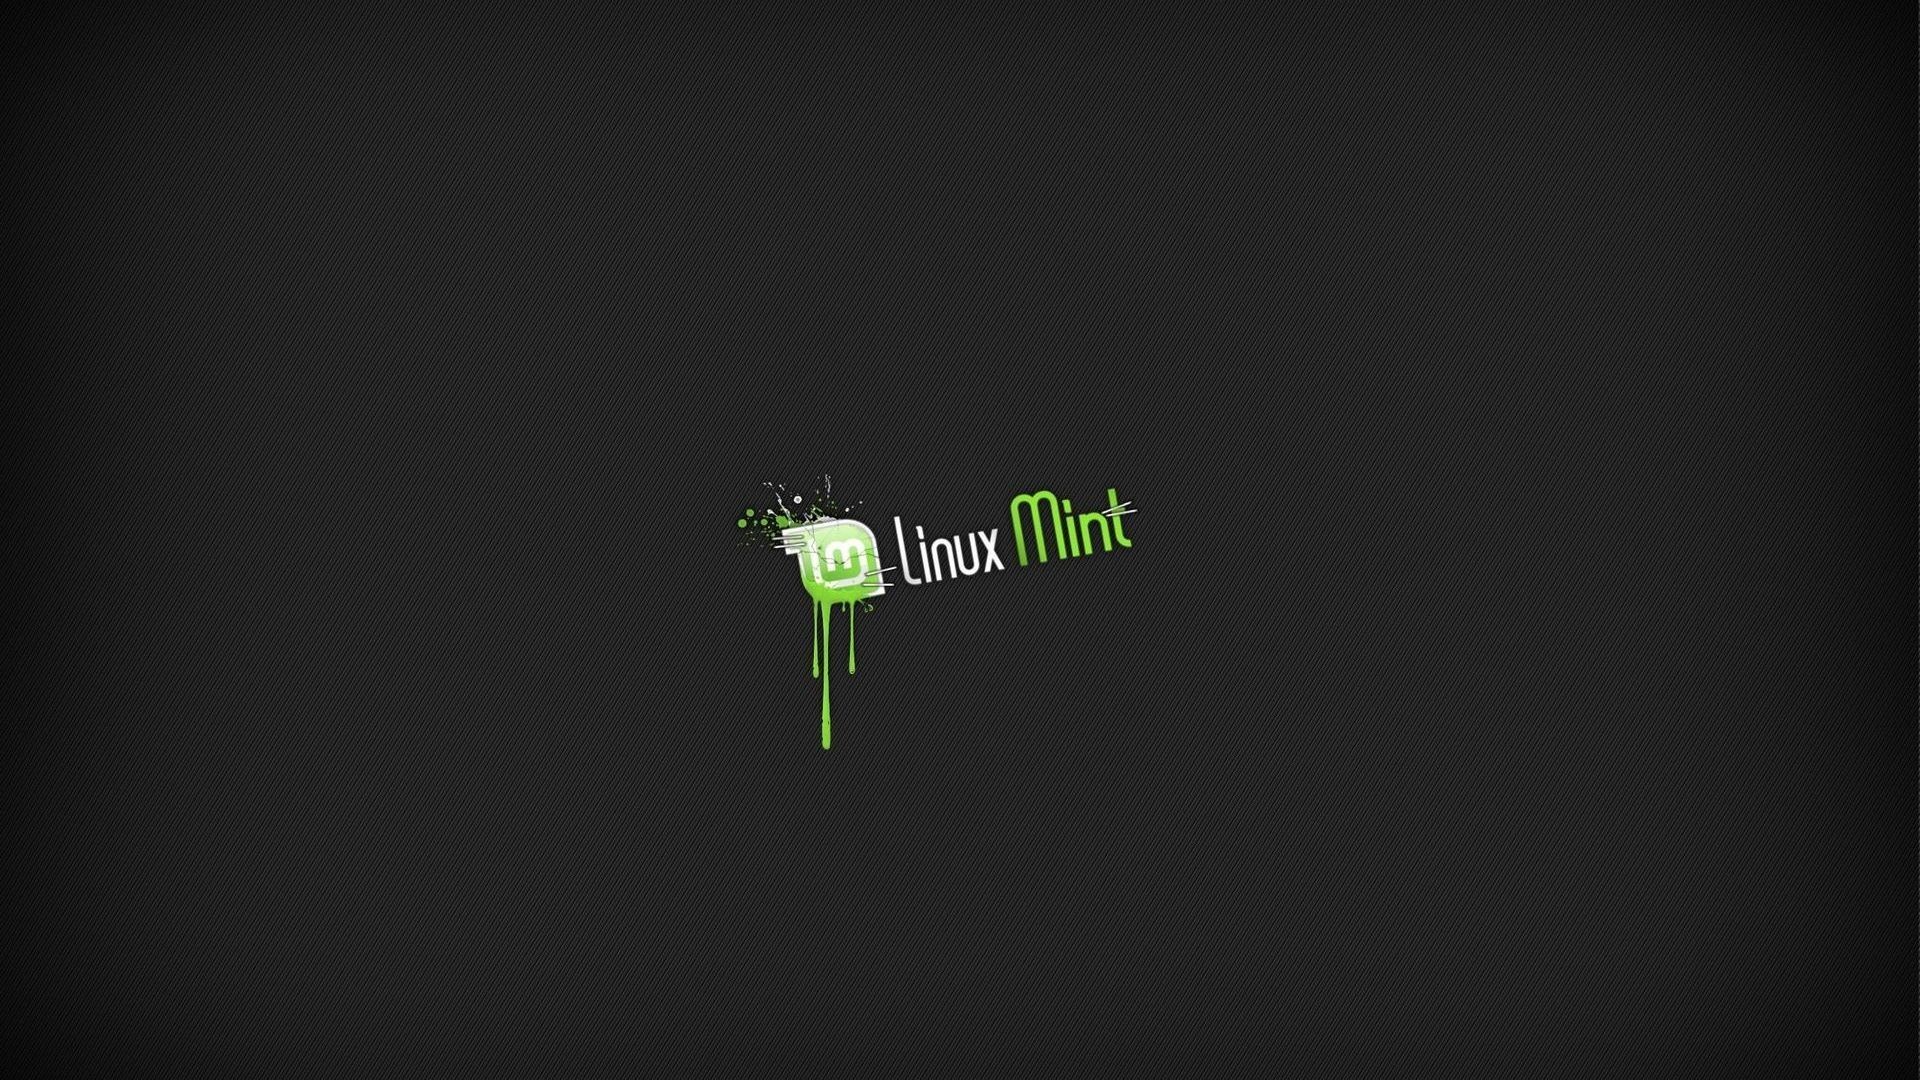 Linux Mint Wallpaper 1920x1080 1920x1080 for phones. Linux mint